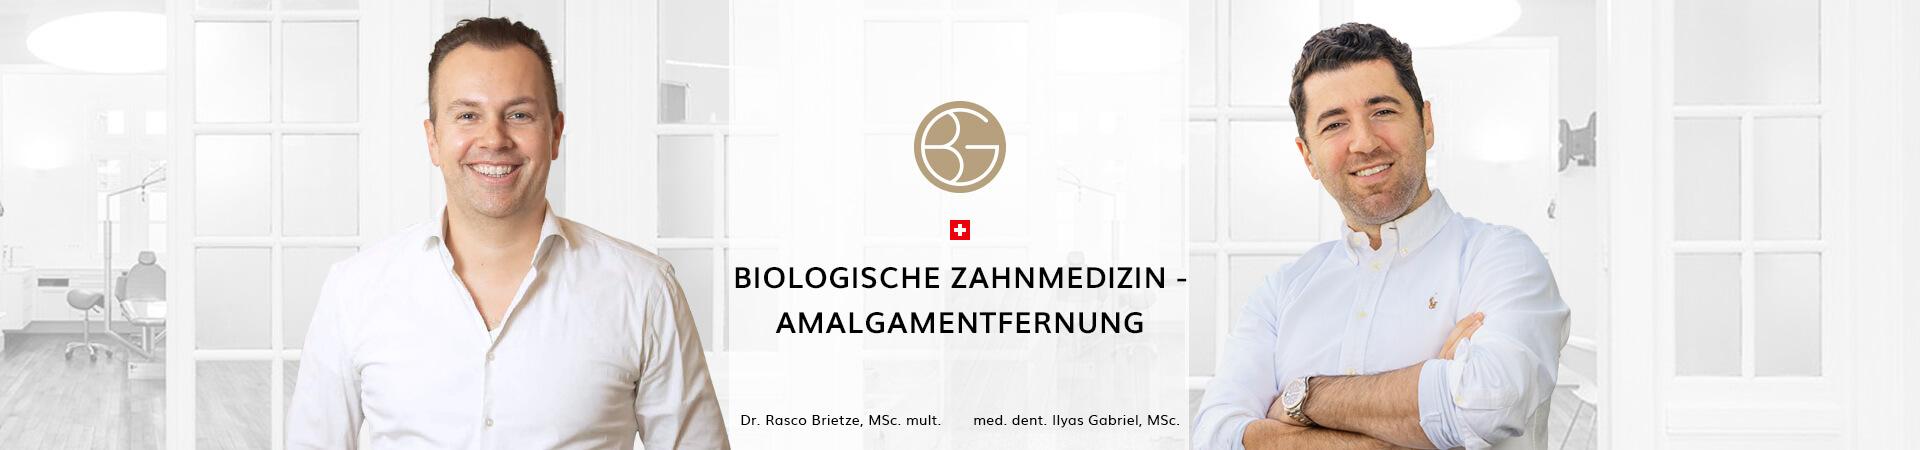 Biologische Zahnmedizin, Zahnärzte Ebmatingen, Dr. Brietze & Dr. Gabriel 